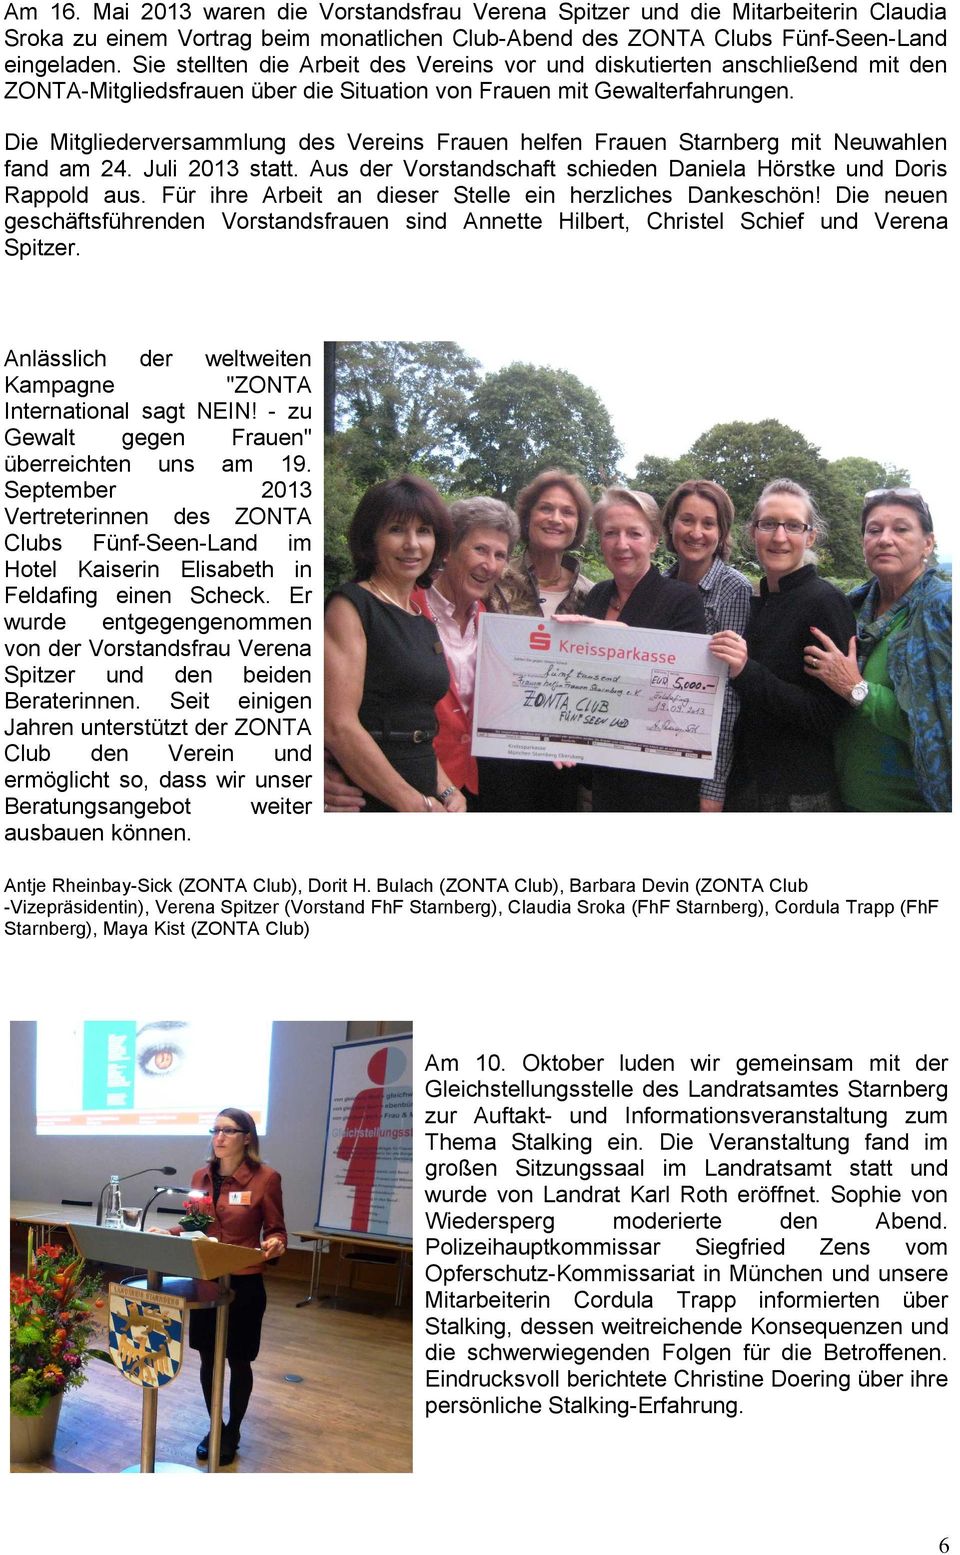 Die Mitgliederversammlung des Vereins Frauen helfen Frauen Starnberg mit Neuwahlen fand am 24. Juli 2013 statt. Aus der Vorstandschaft schieden Daniela Hörstke und Doris Rappold aus.